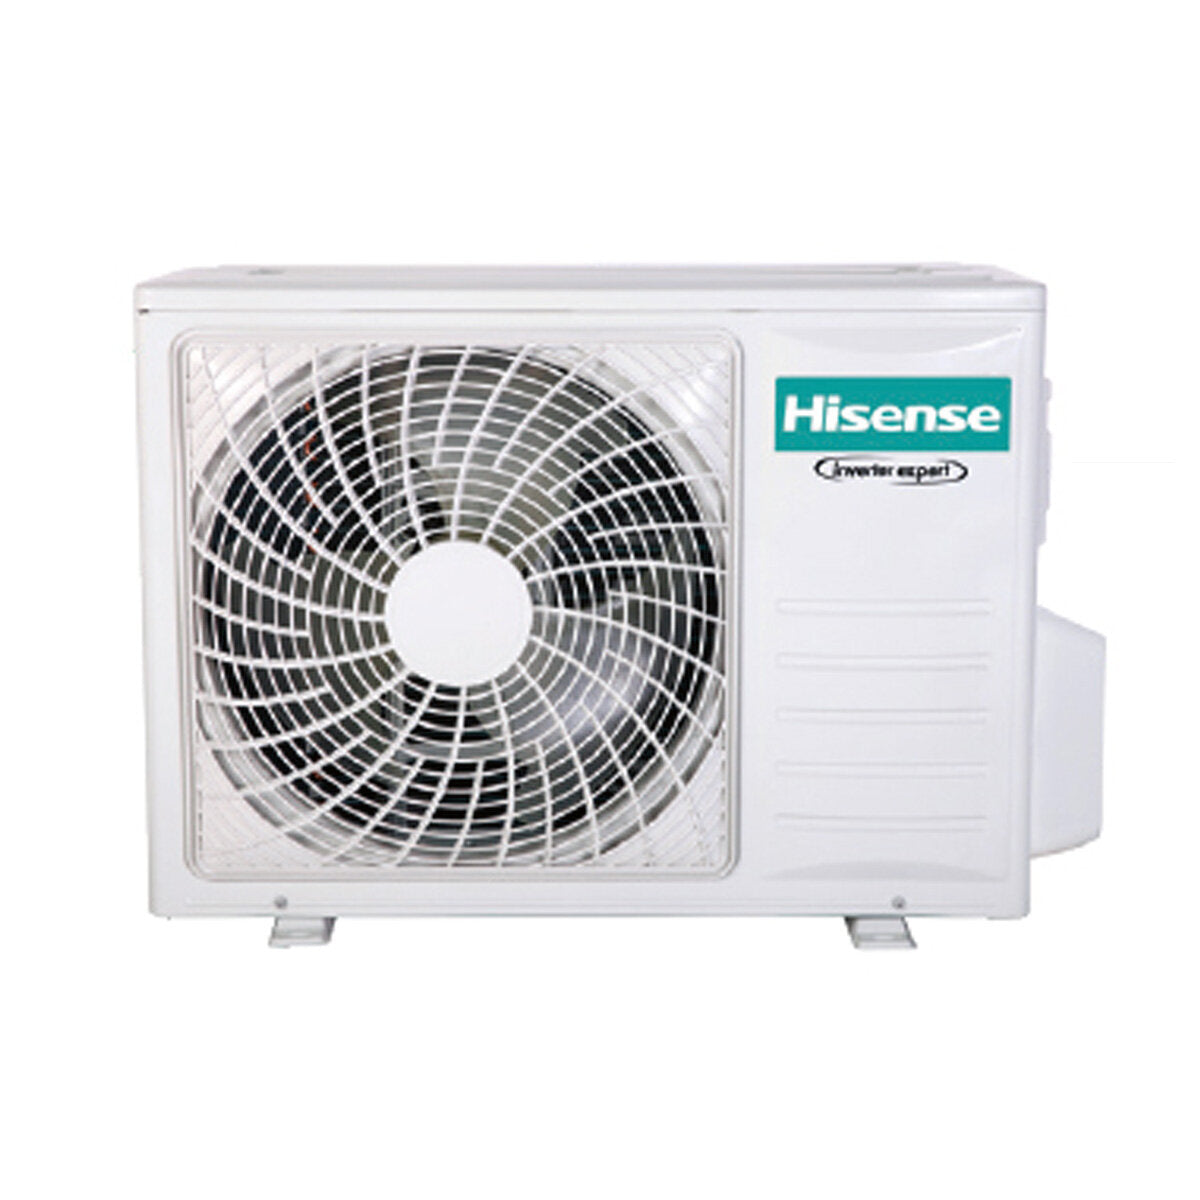 Hisense air conditioner Cassette ACT dual split 12000+12000 BTU inverter A++ outdoor unit 6.3 kW